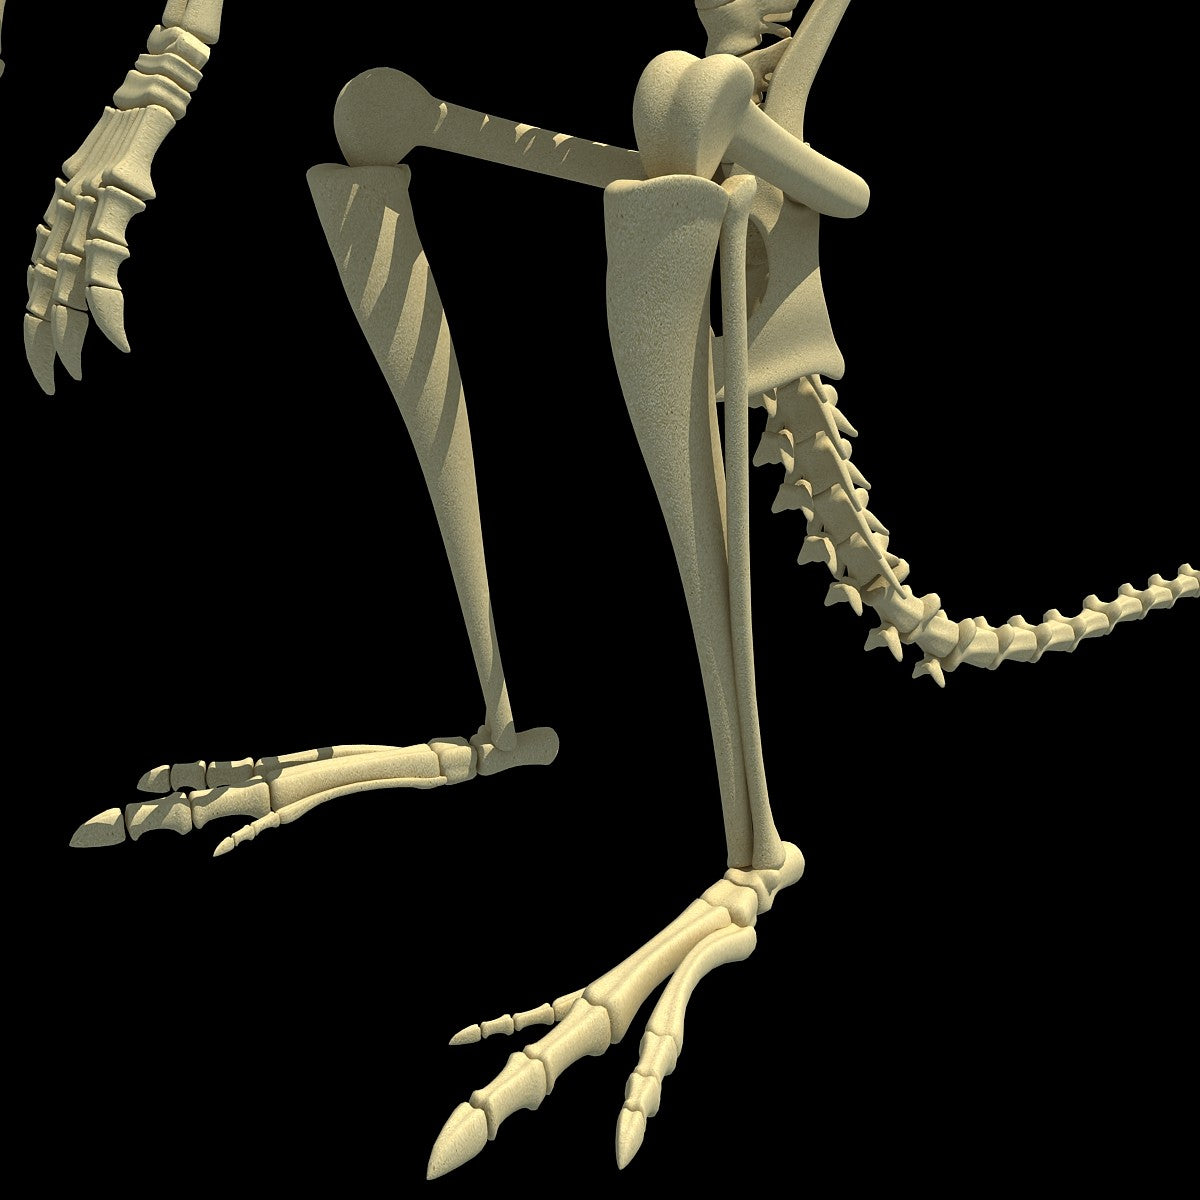 Kangaroo Skeleton Model